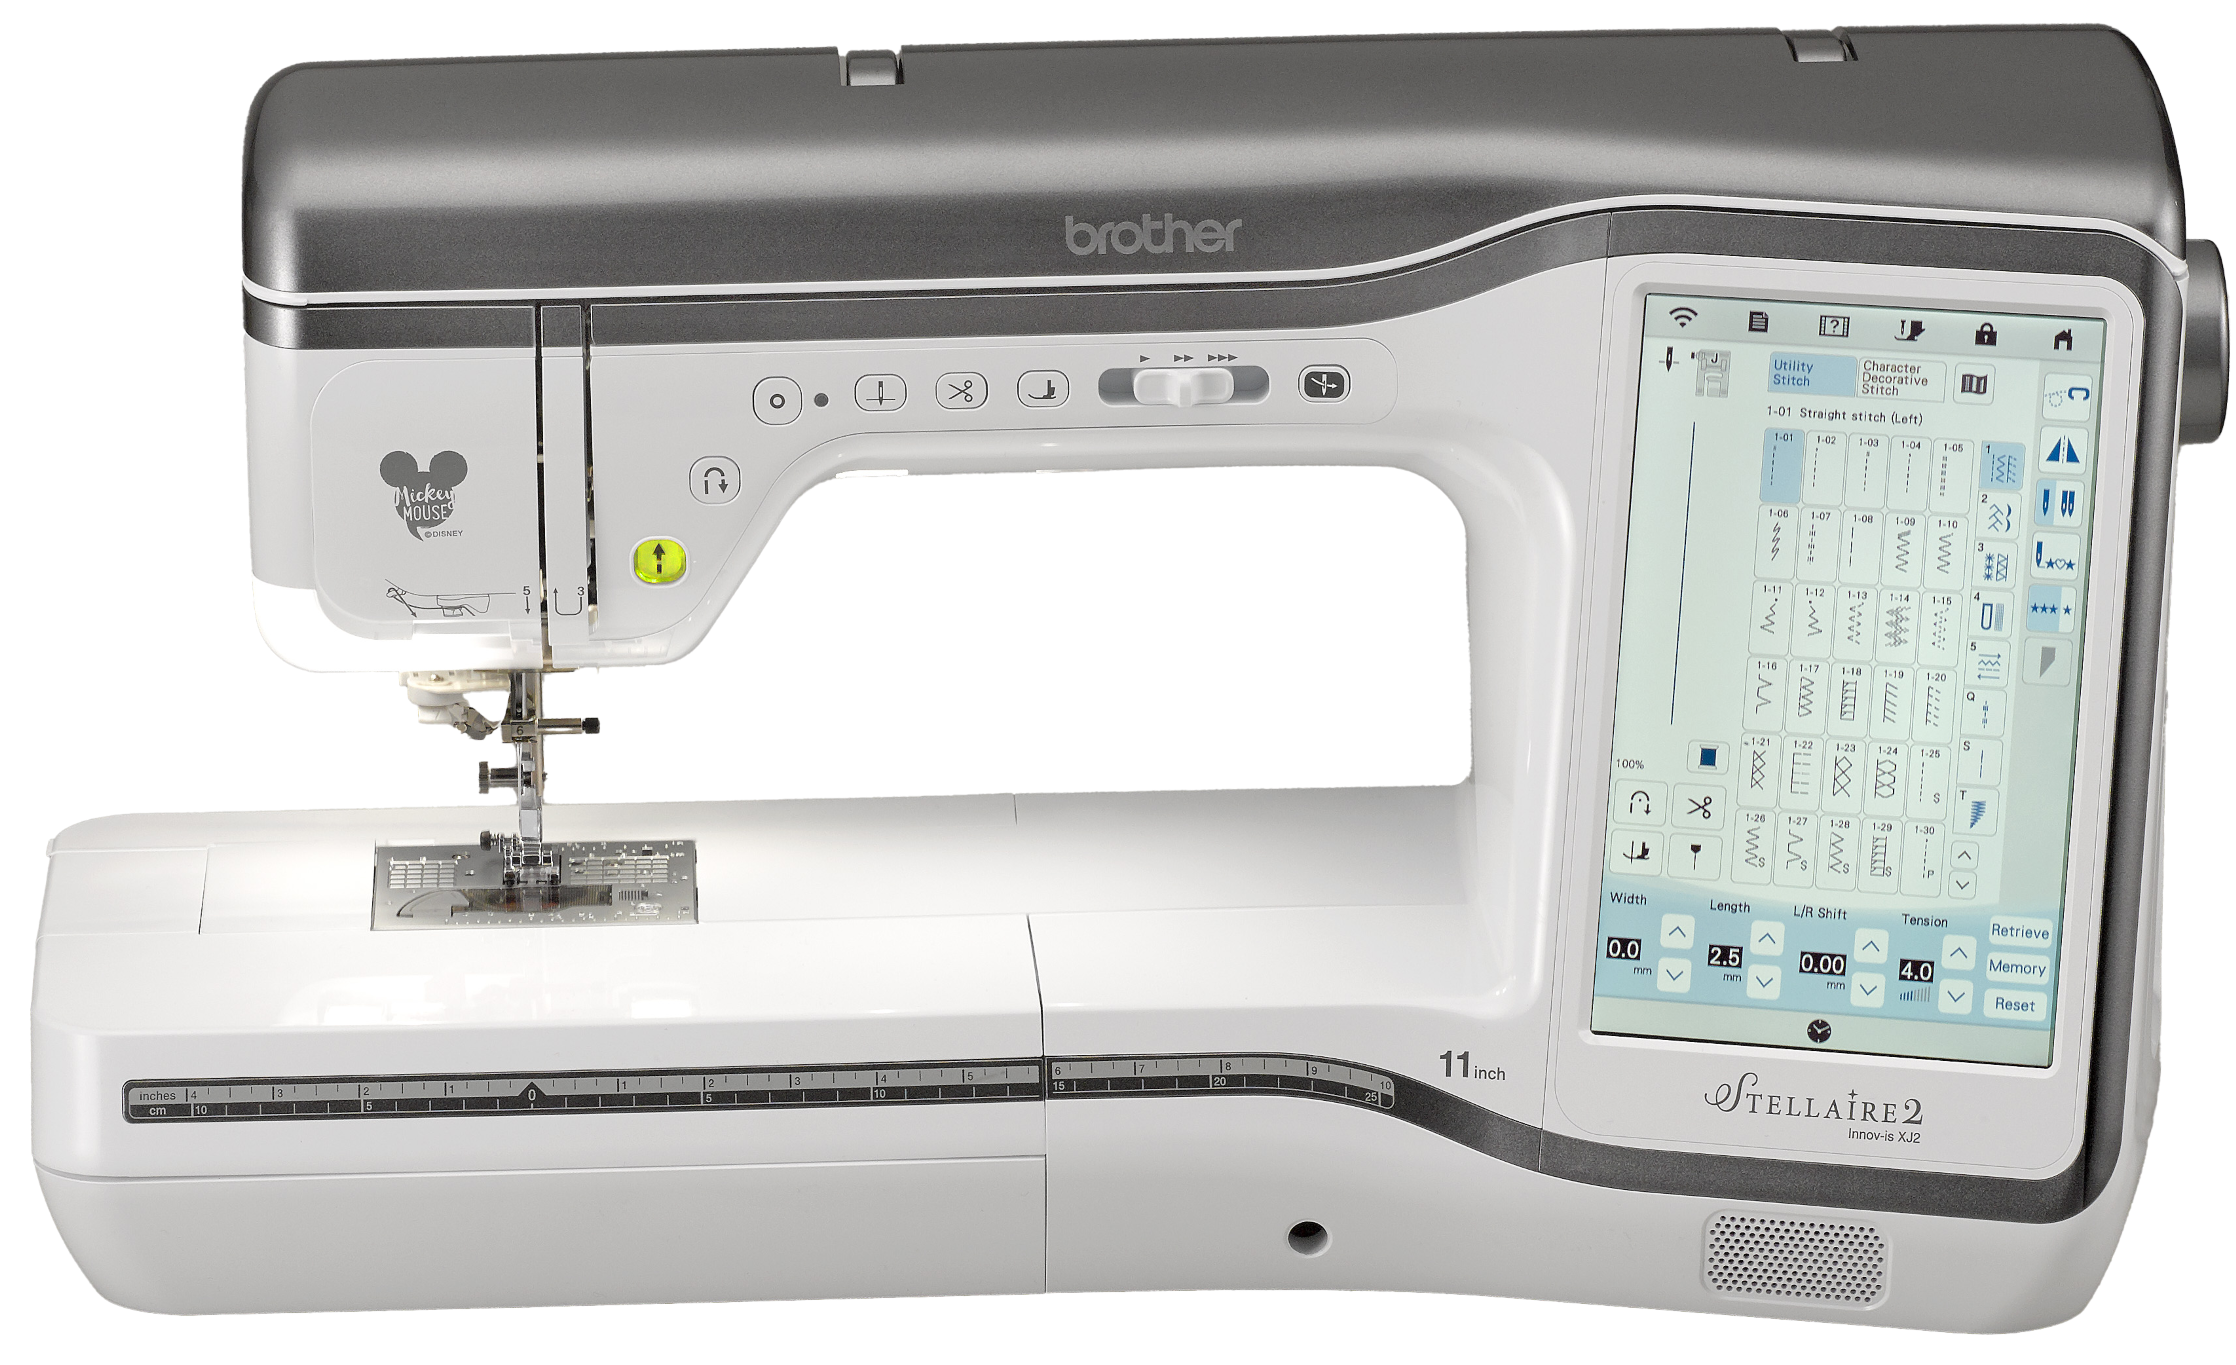 Brother SDX330D Disney ScanNCut Craft Cutting Machine – World Weidner